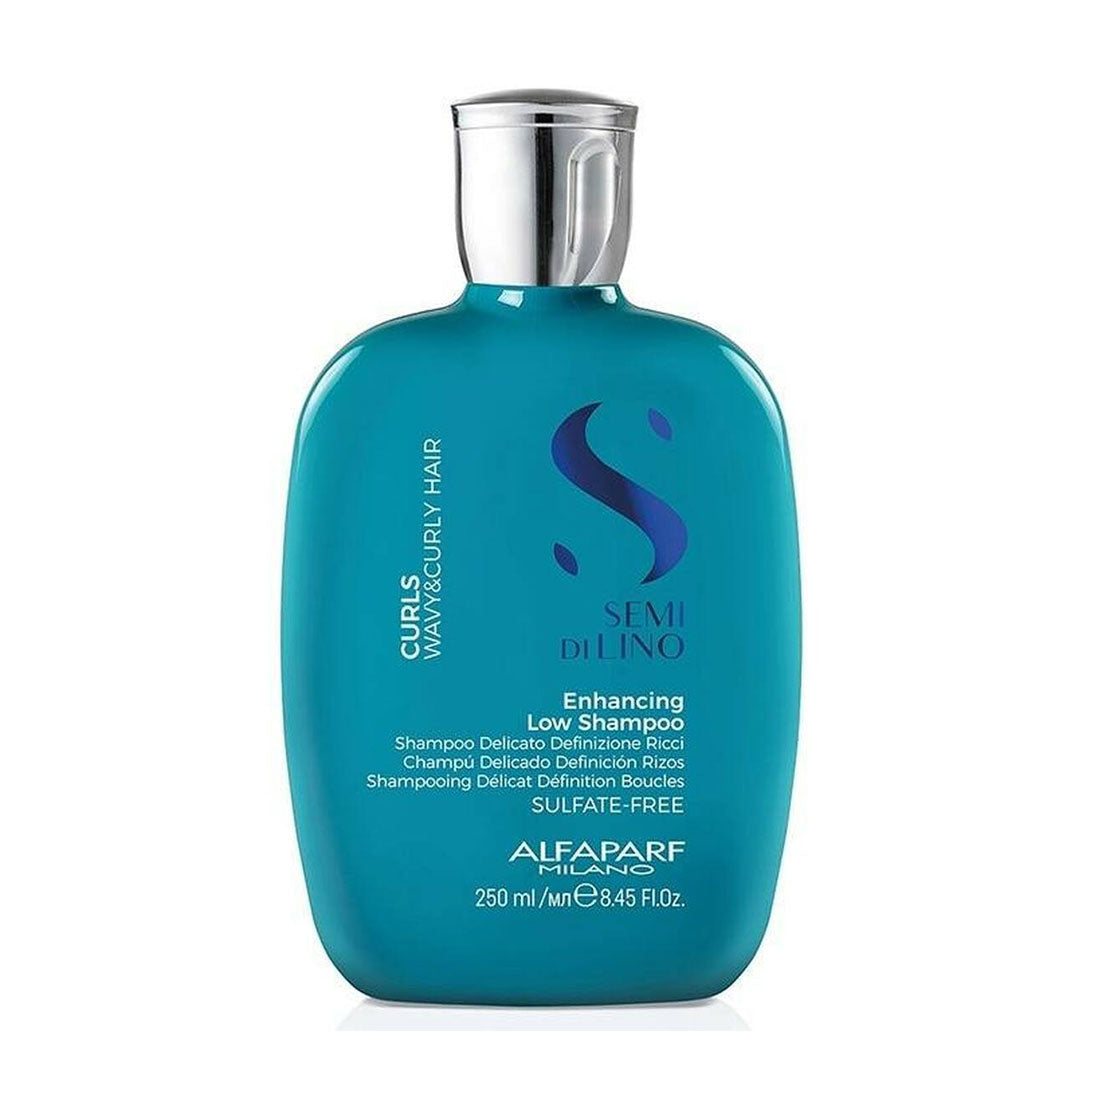 SDL Curls Enhancing Low Shampoo 250ml - Limpieza suave que hidrata y define ondas y rizos